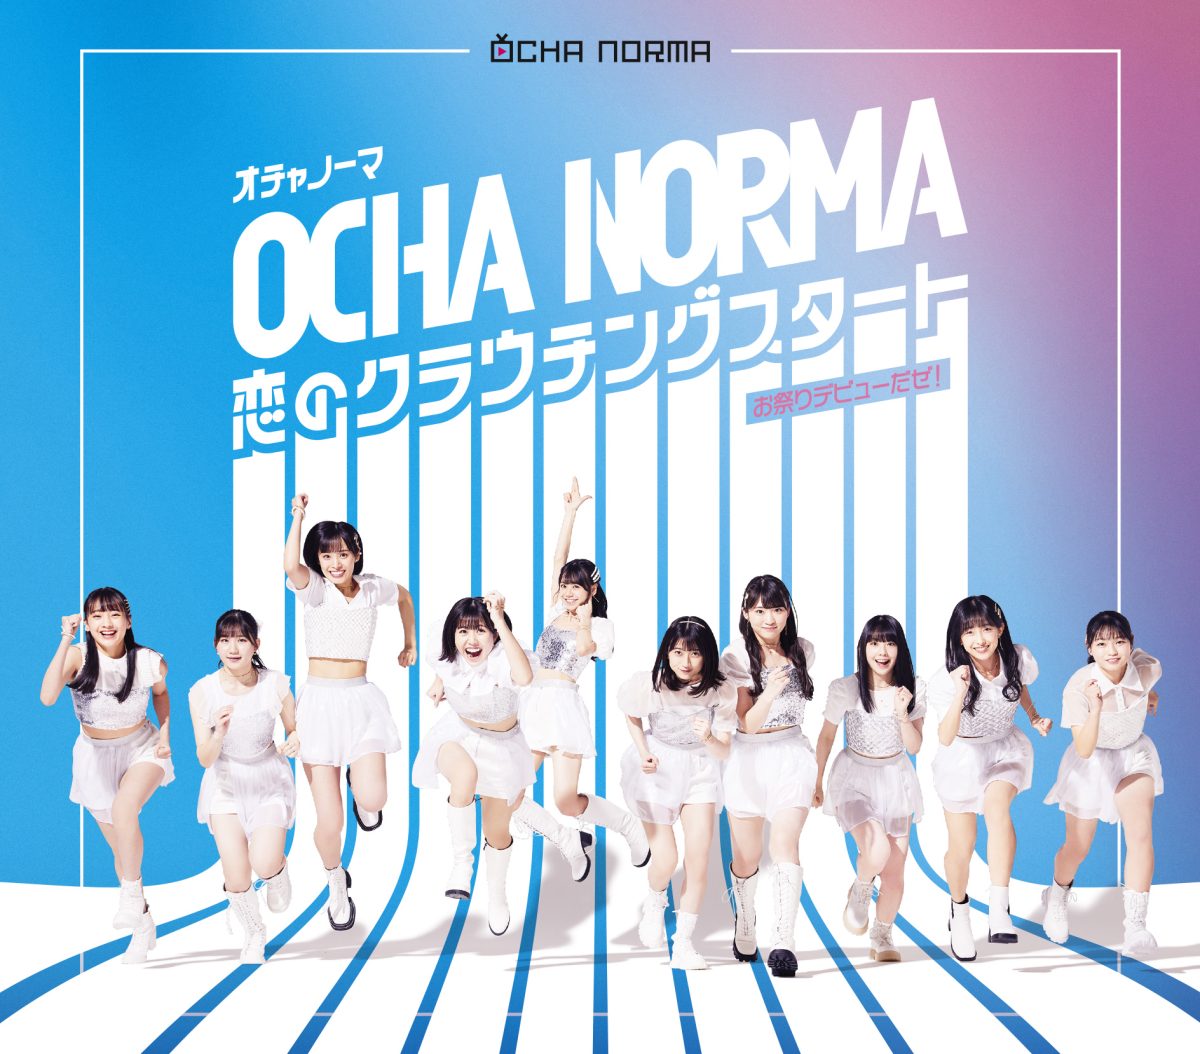 ハロプロのアイドルグループ “OCHA NORMA”がついにメジャーデビュー！ リーダーの斉藤円香は“全力で突っ走っていく”と宣言！